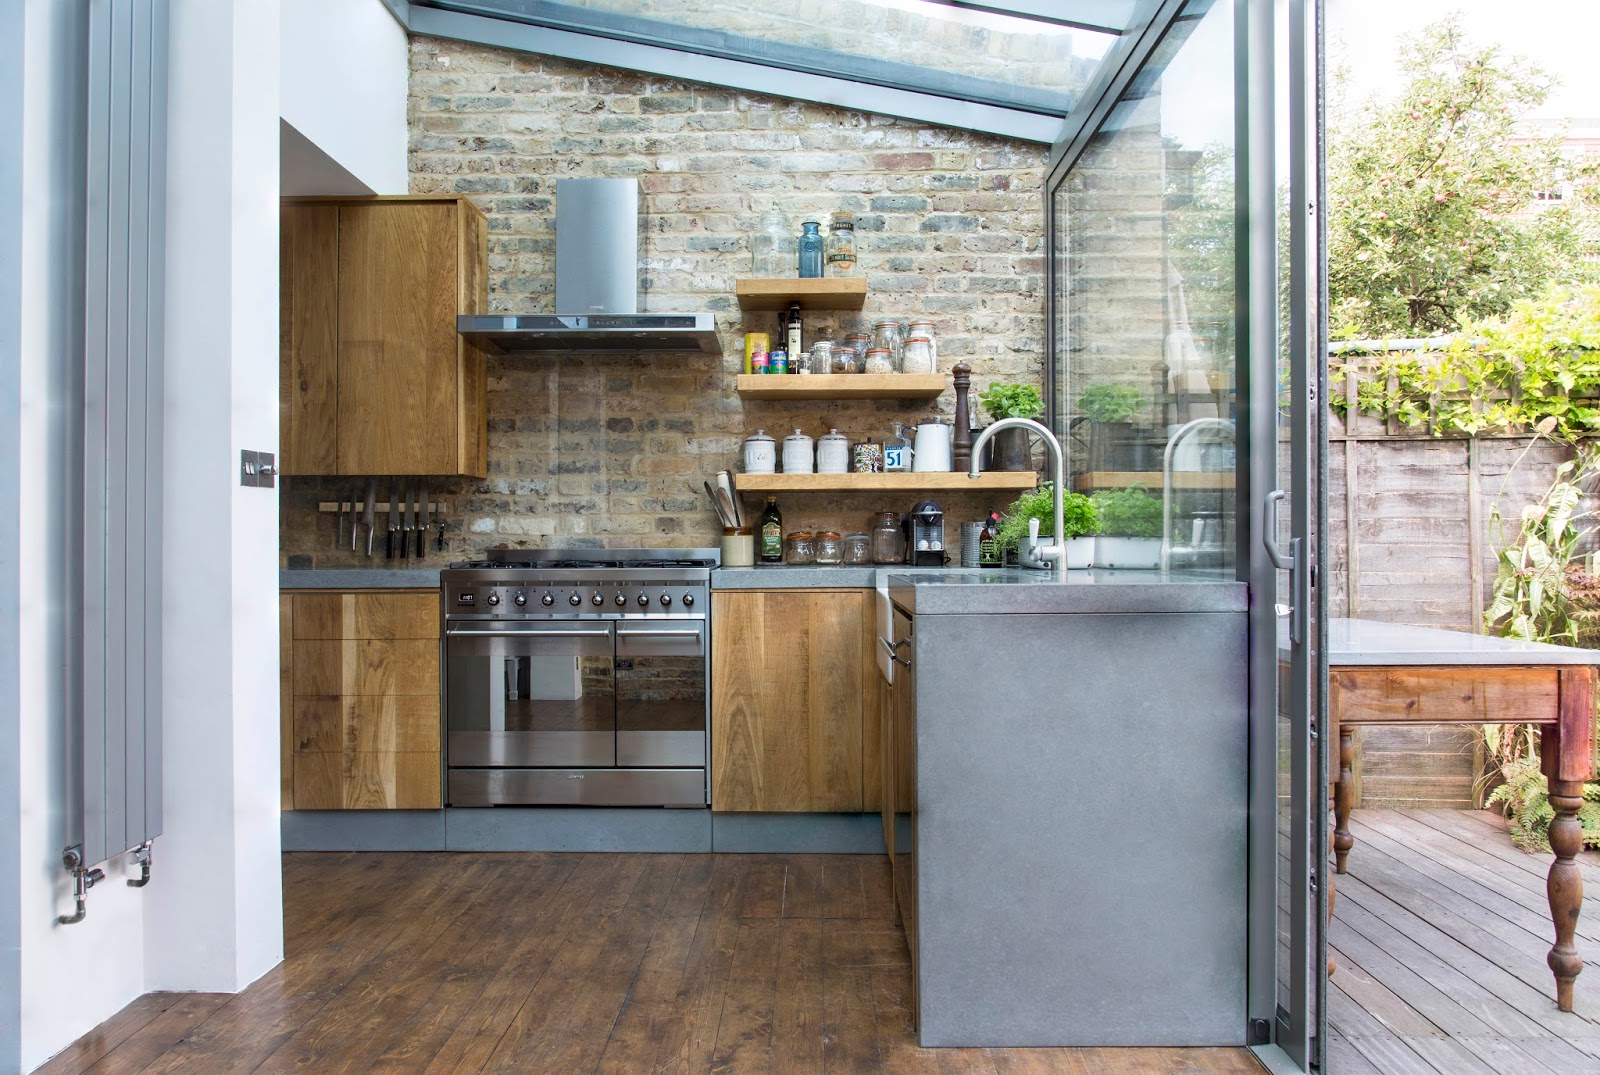 DesignBox Architecture: London Kitchen